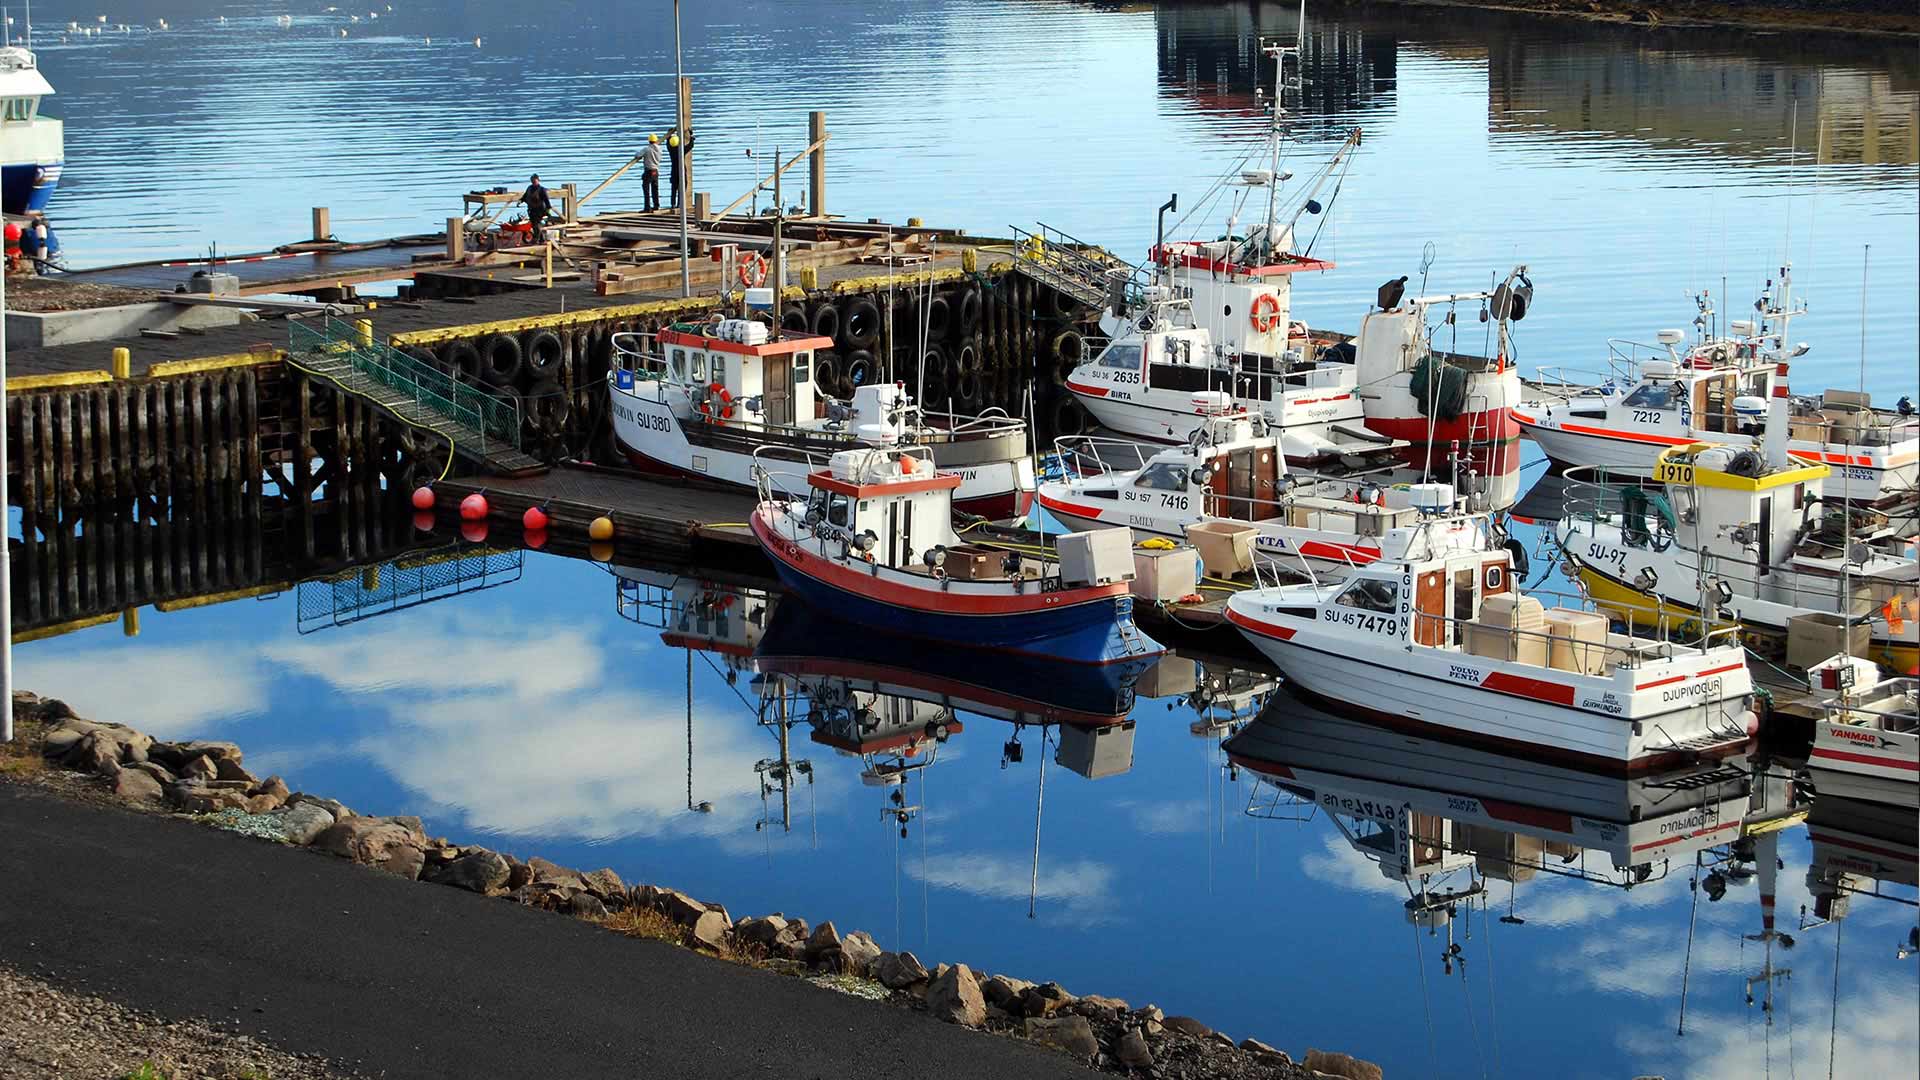 Boats in Djúpivogur - Iceland